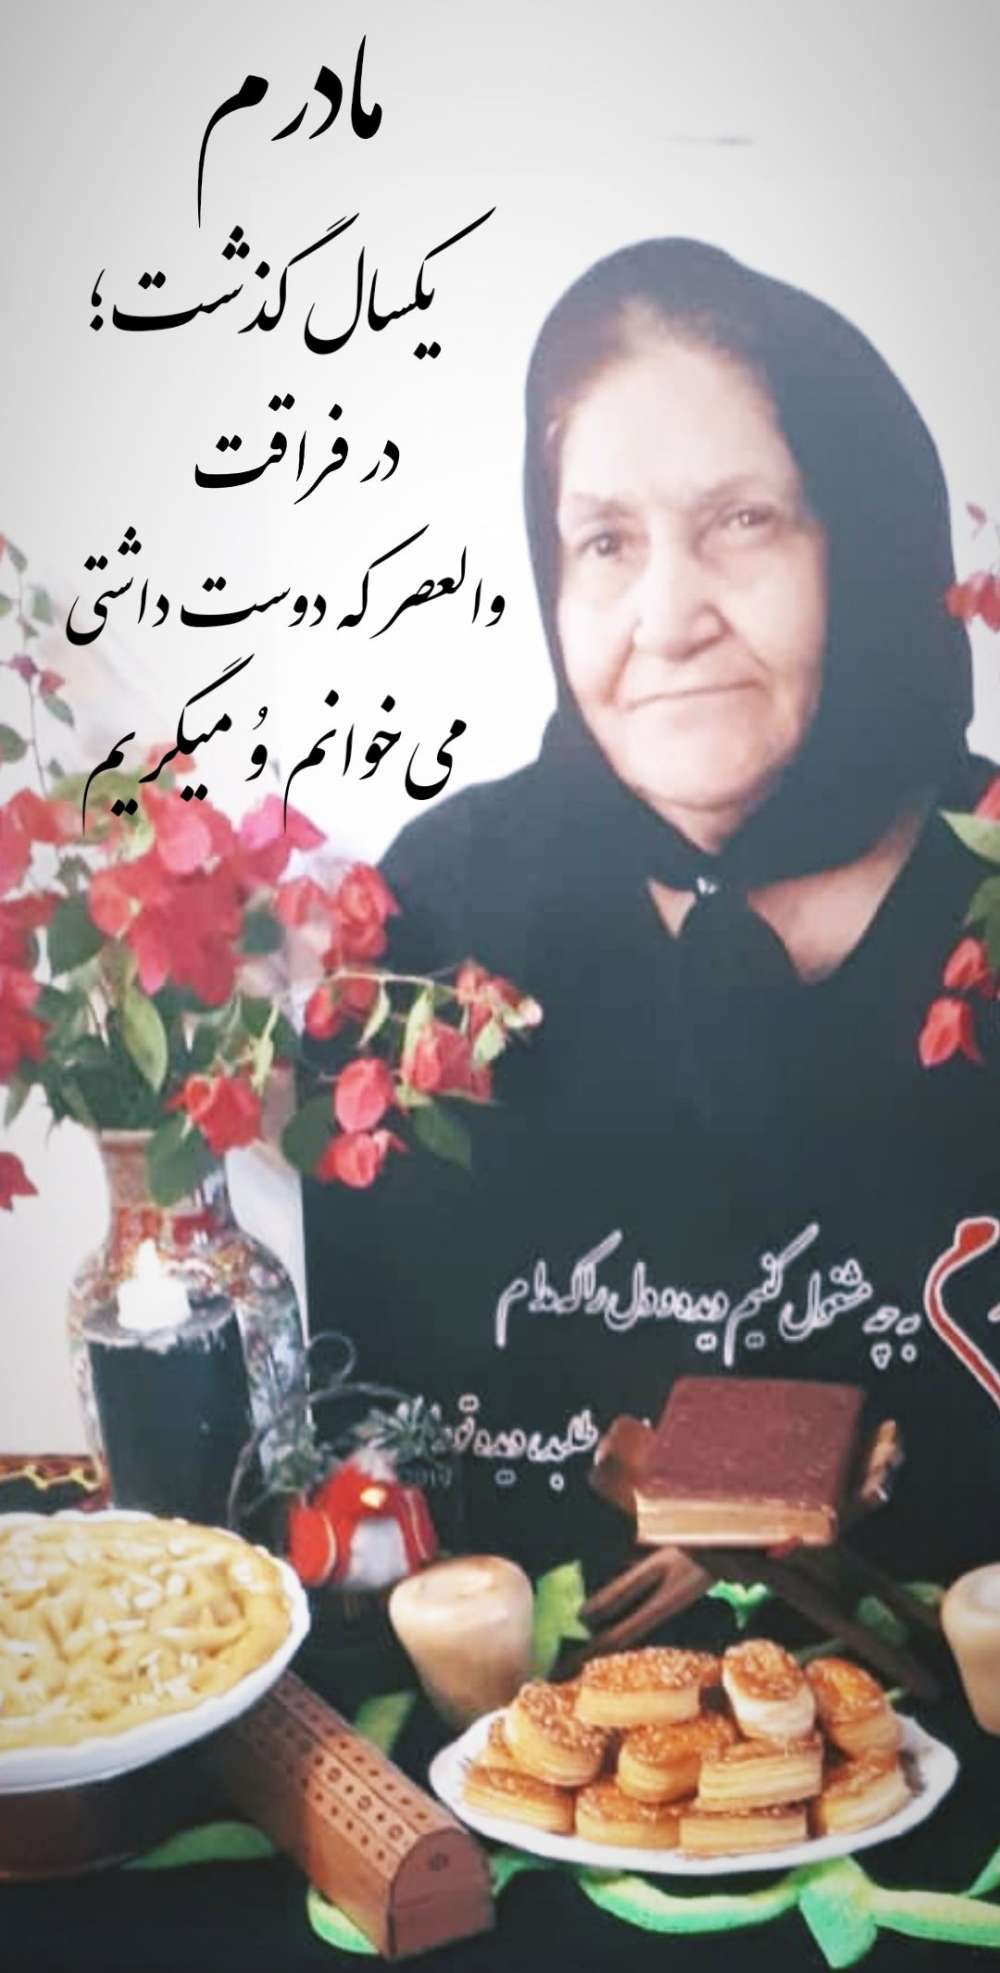 یکمین سالگرد مادرم حاجیه خانم امیره صوفی